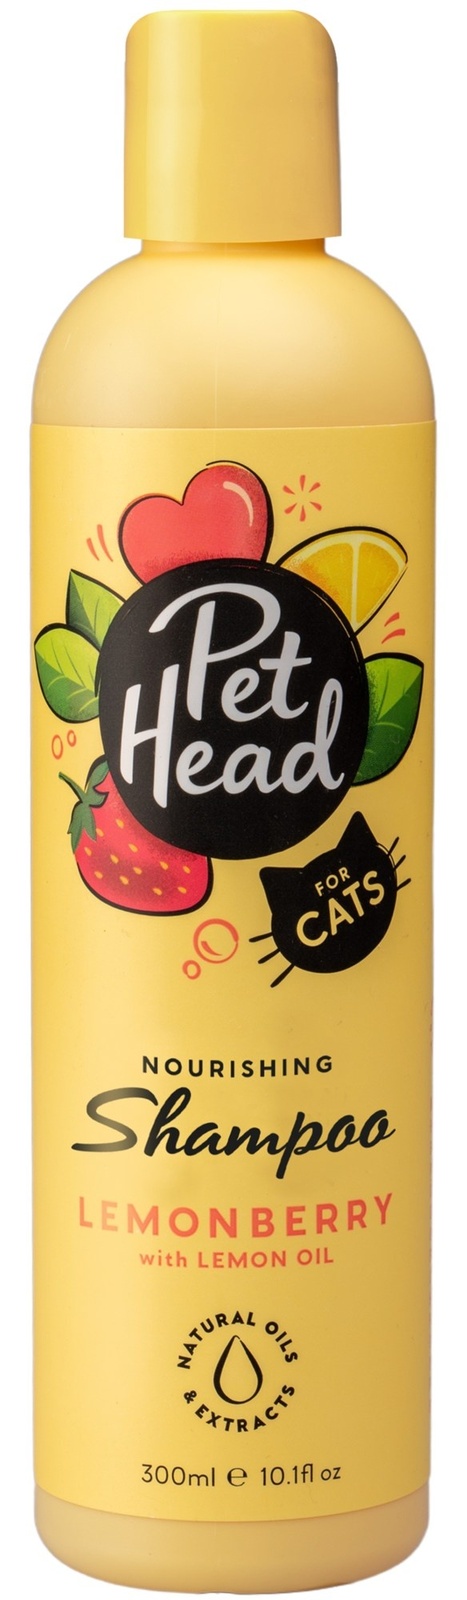 Pet Head шампунь для кошек 